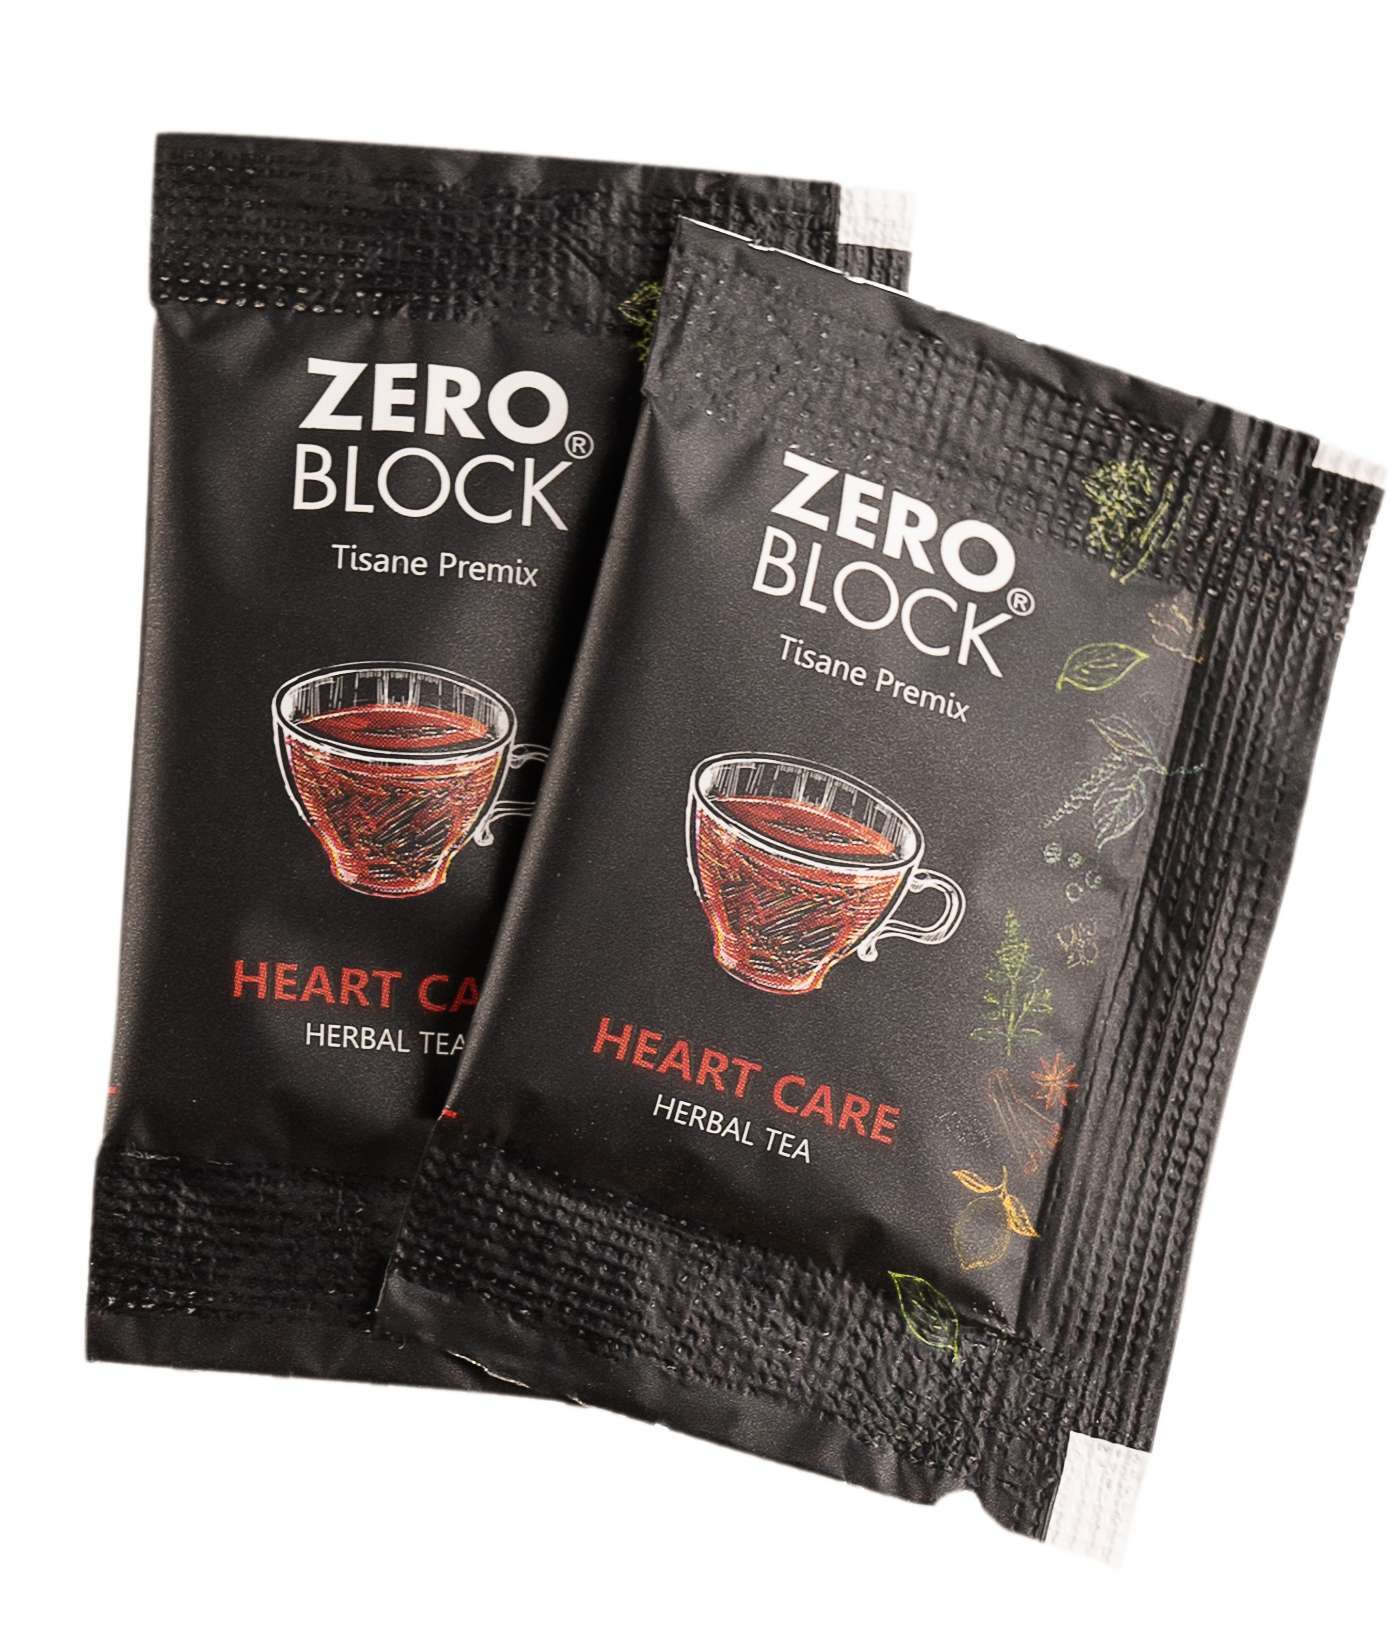 Heart Care Herbal Tea - Zero Block